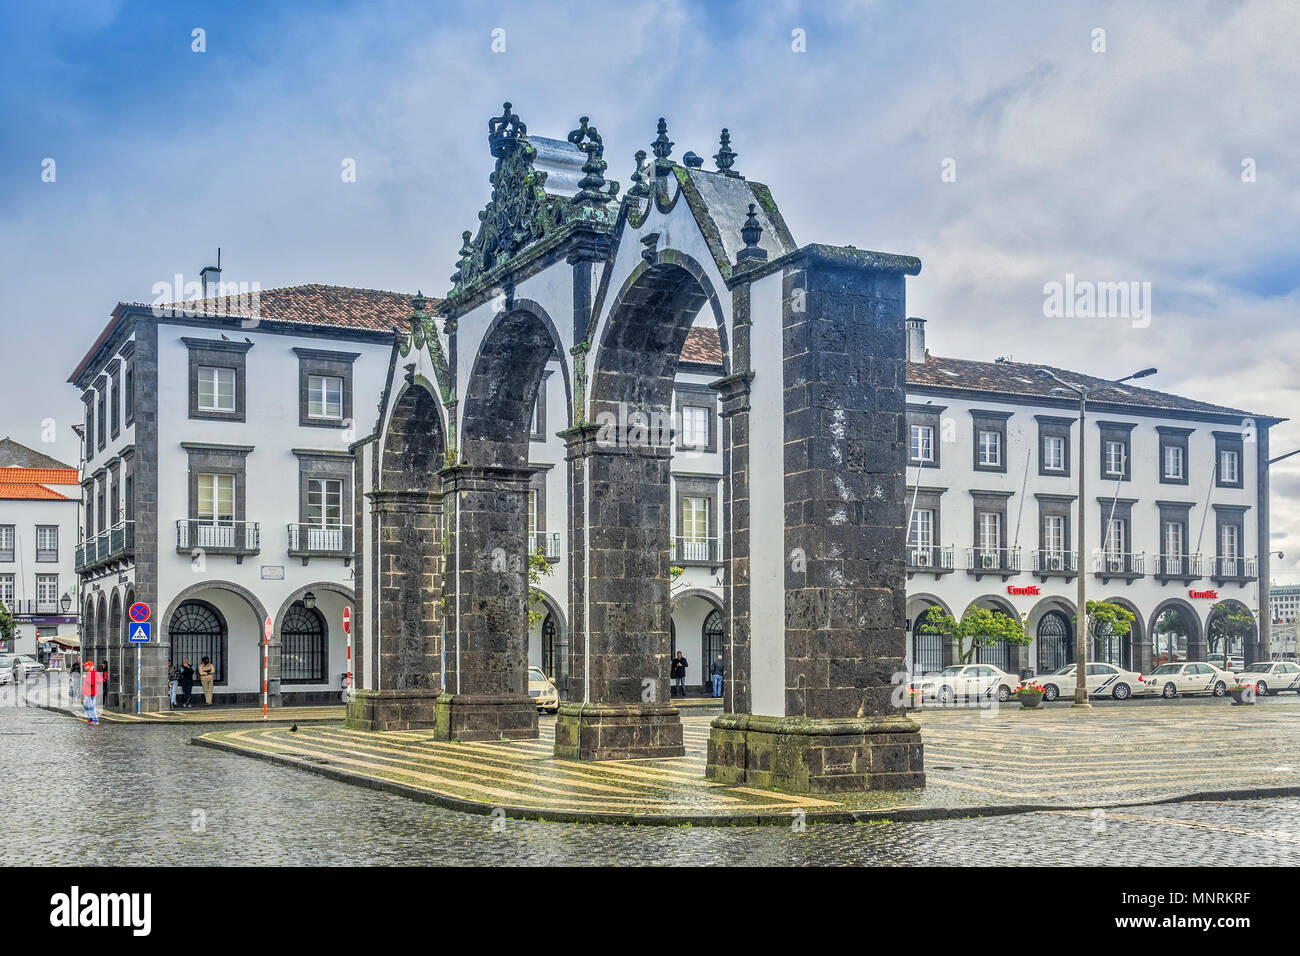 La place principale, Ponta Delgada. L'île de São Miguel Açores, Portugal Banque D'Images